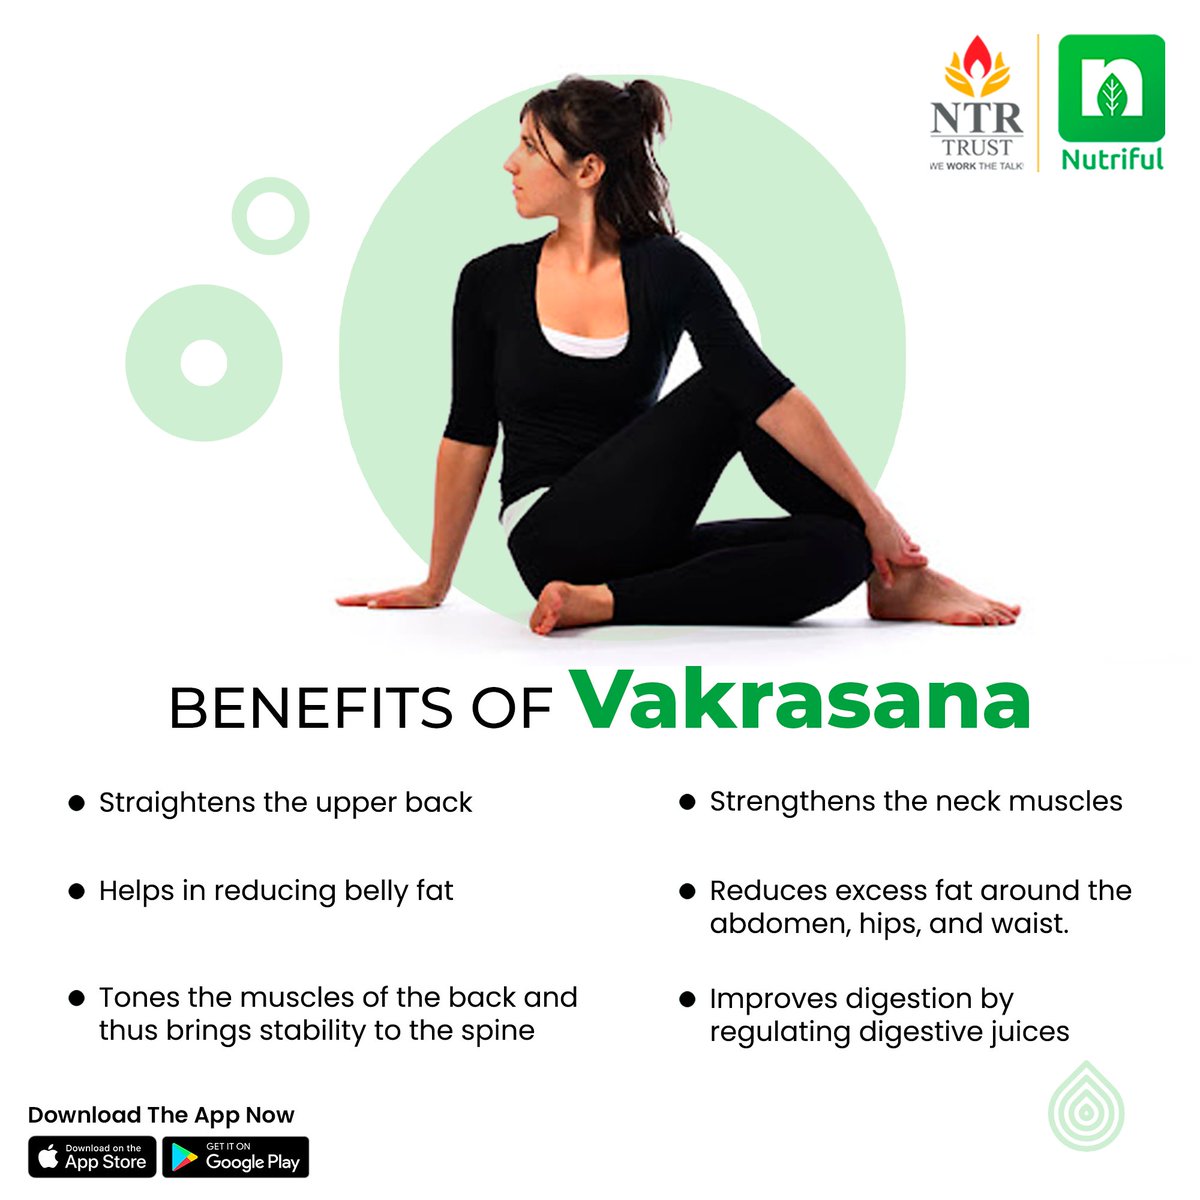 Twist away stress, embrace wellness: Discover the benefits of Vakrasana! 

#vakrasana #twisttohealth #yoga #yogainspiration #yogachallenge #seatedtwist #yogapractice #yogalife #yogamotivation #yogadaily #yogaeveryday